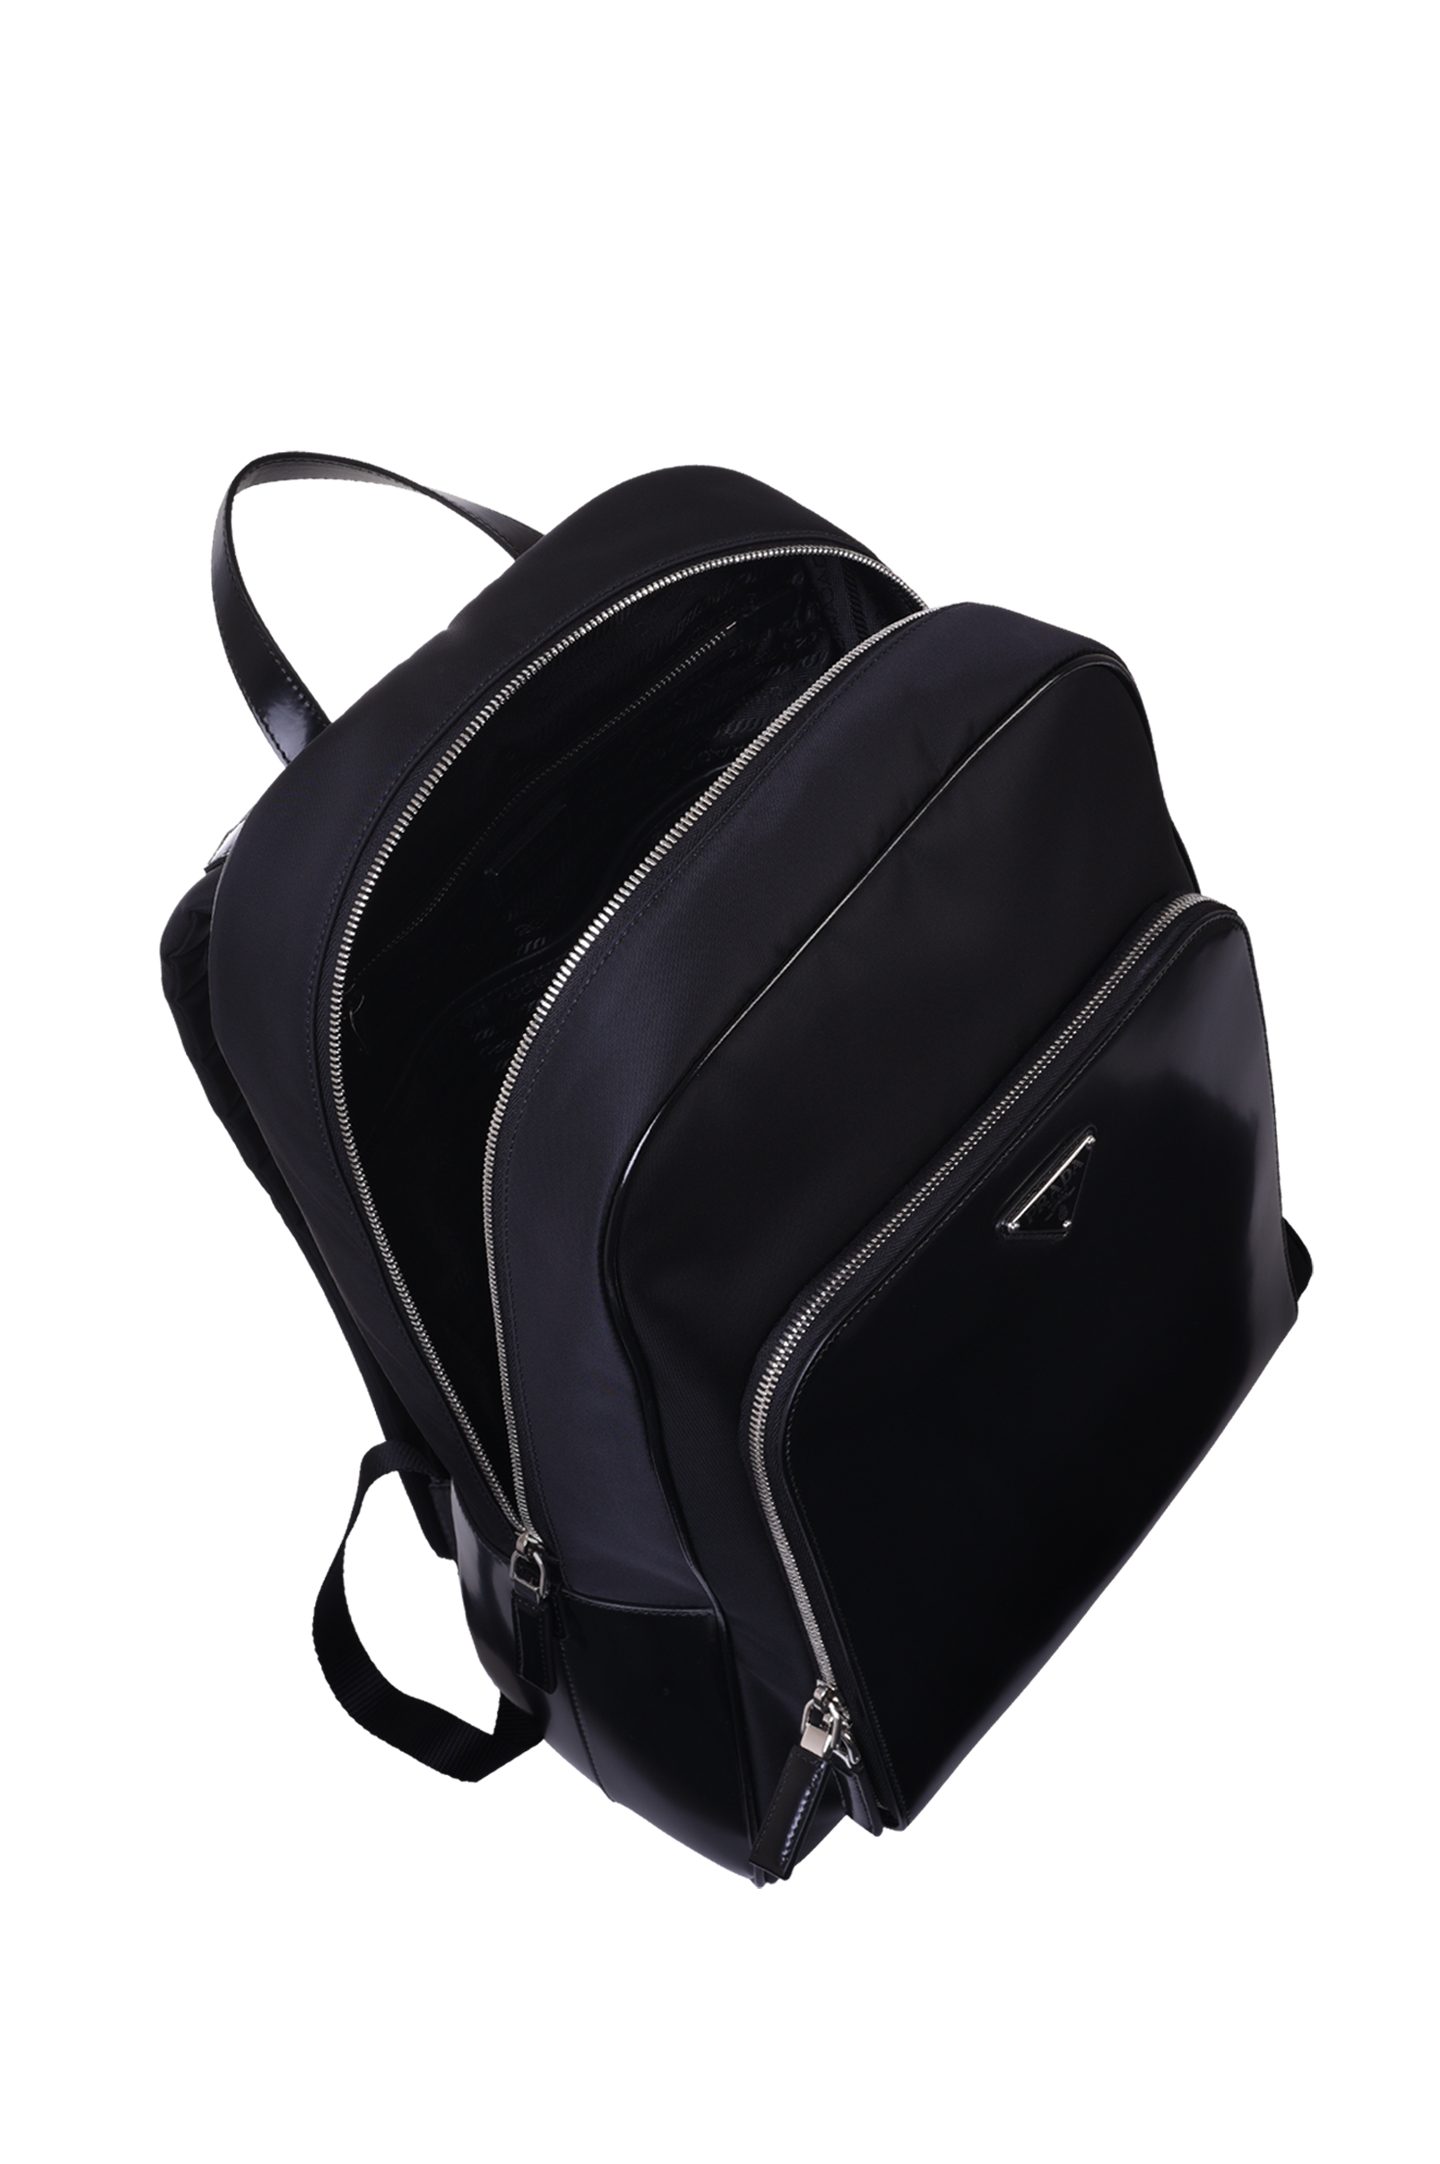 Рюкзак PRADA 2VZ084 789, цвет: Черный, Мужской